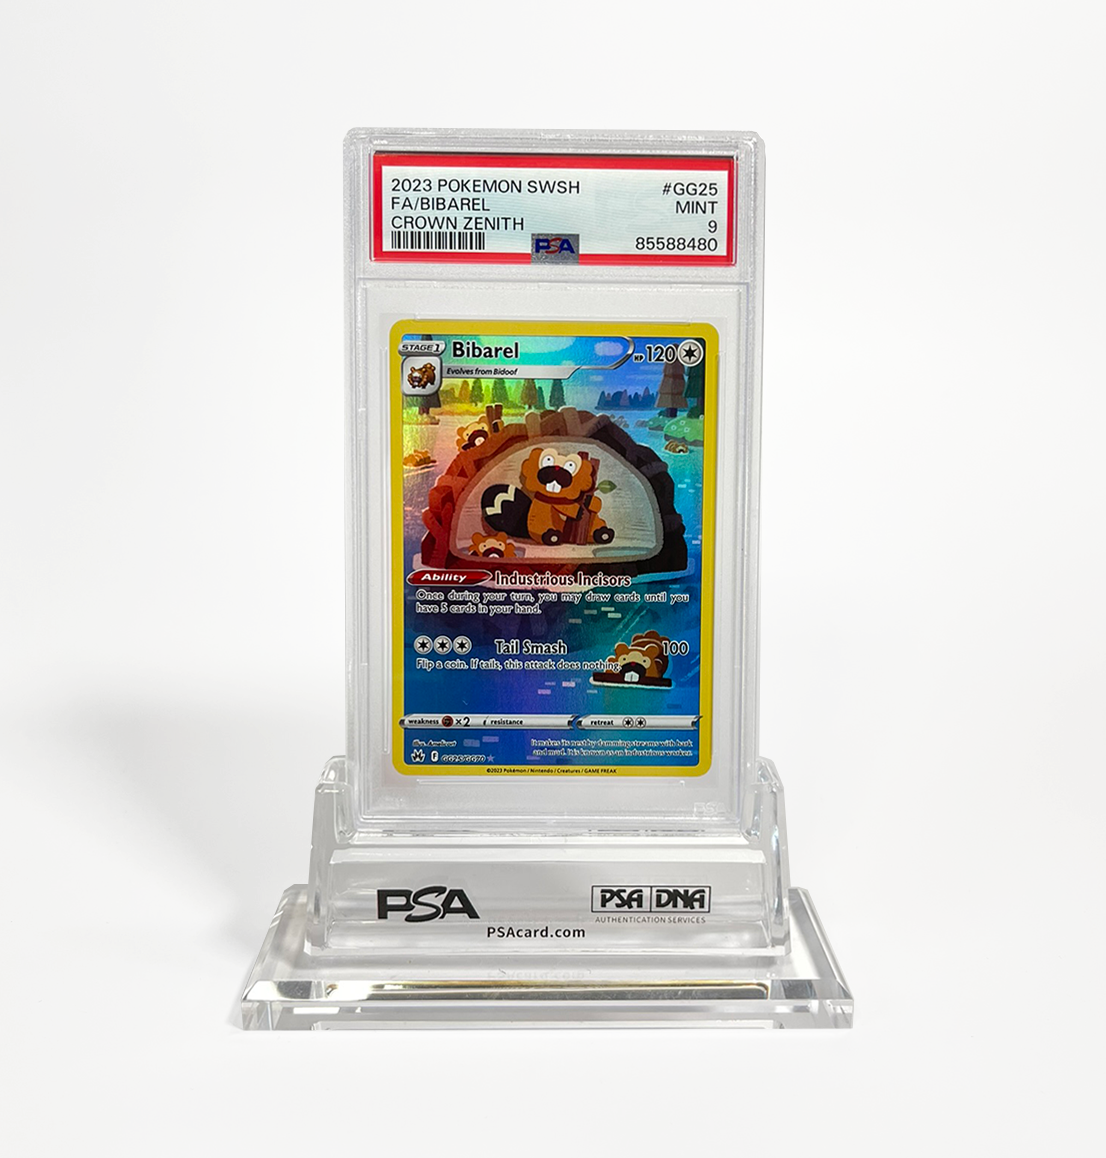 PSA 9 Bibarel #GG25 Crown Zenith Pokemon card